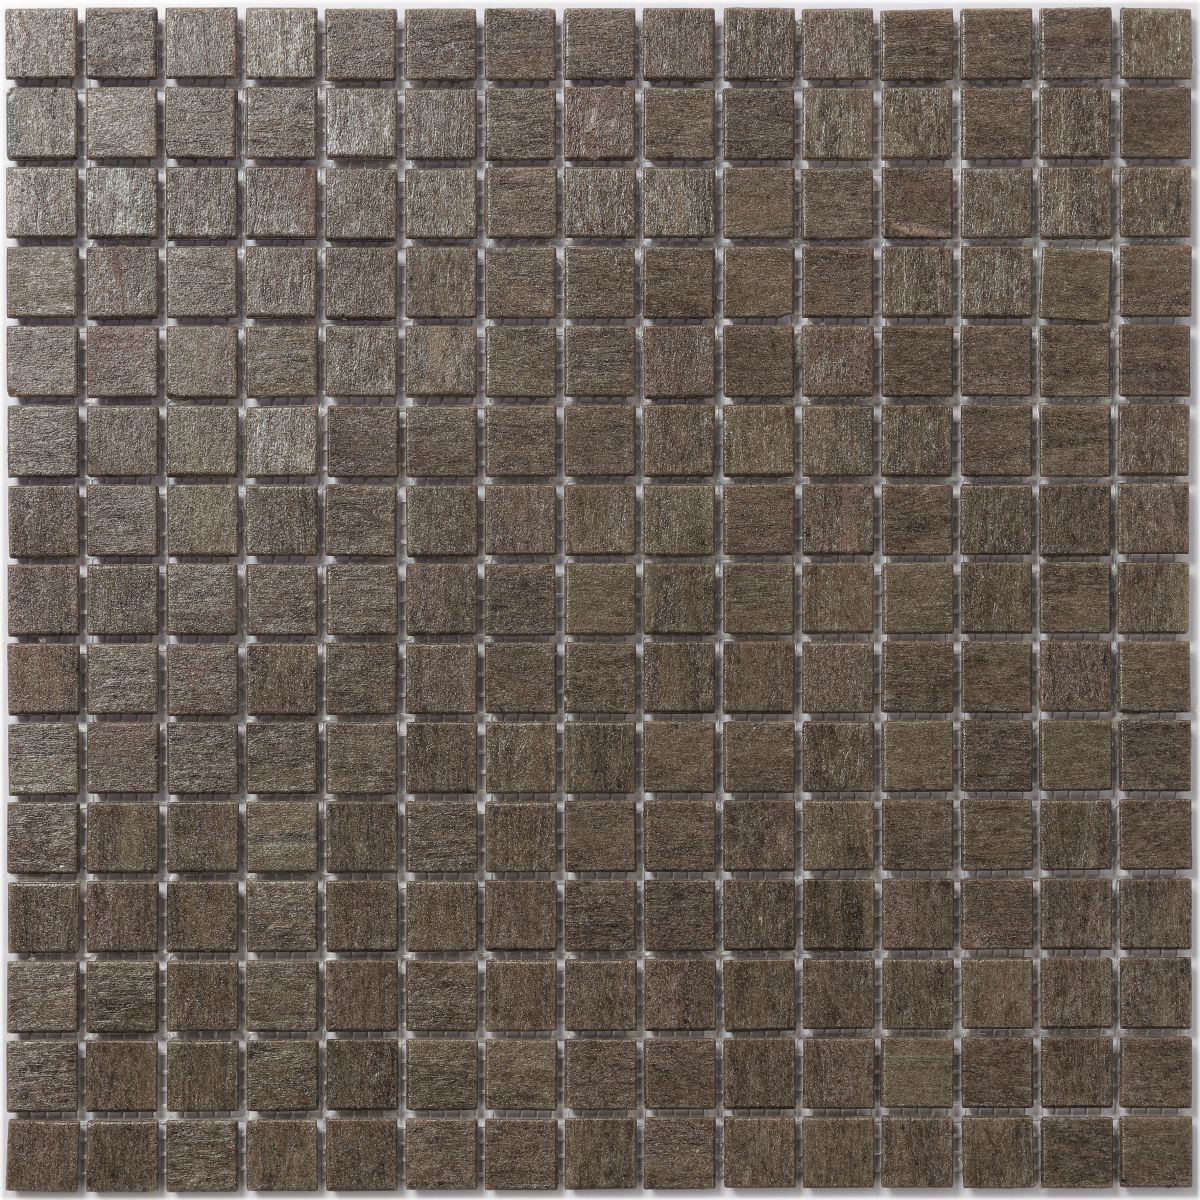 Wooden Texture Dark Matt Glass Mosaic Wall Tile 